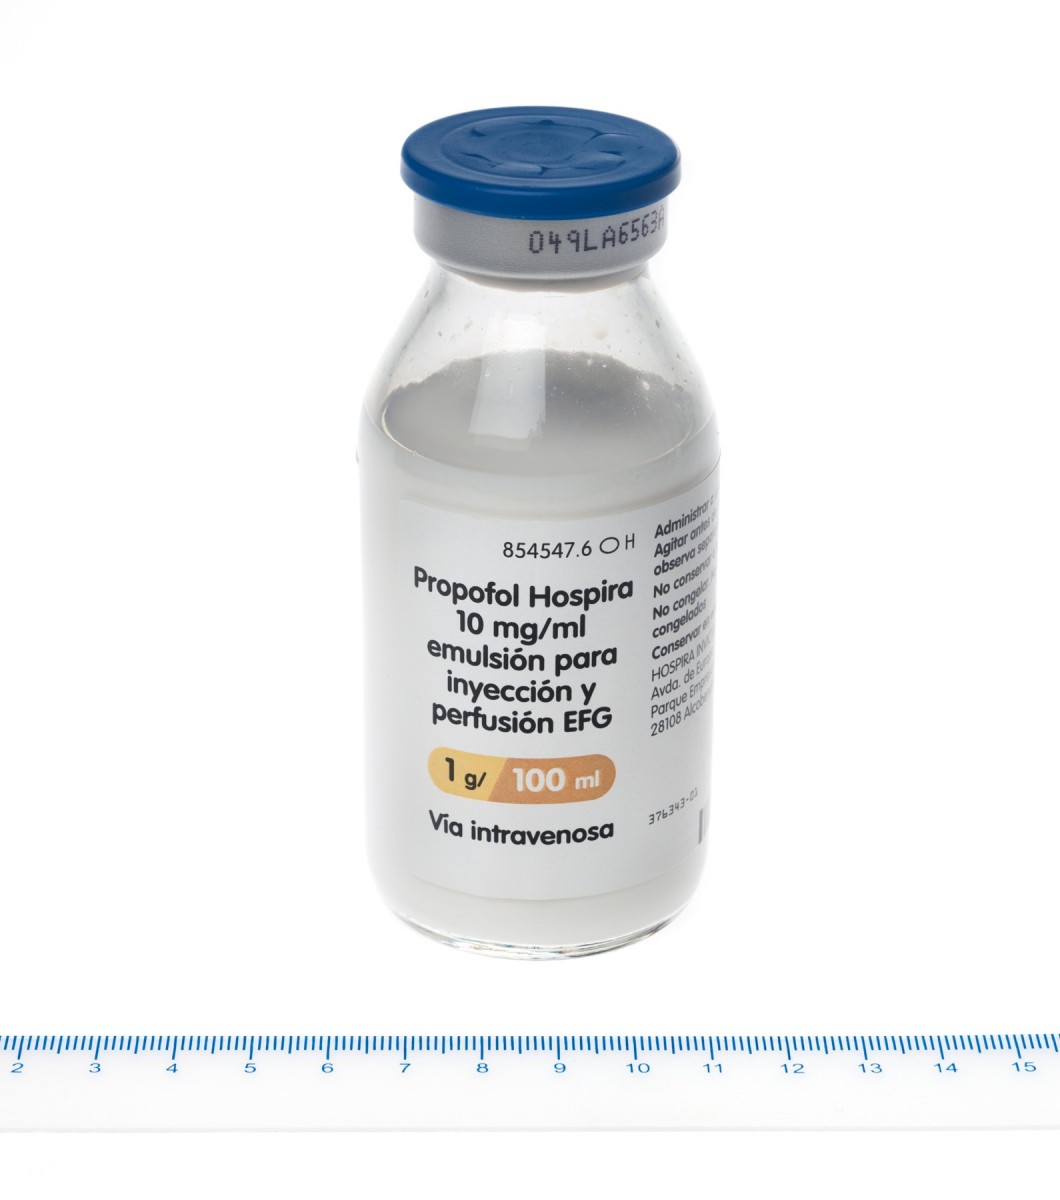 PROPOFOL HOSPIRA 10 mg/ml EMULSION PARA INYECCION Y PERFUSION EFG, 5 viales de 20 ml fotografía de la forma farmacéutica.